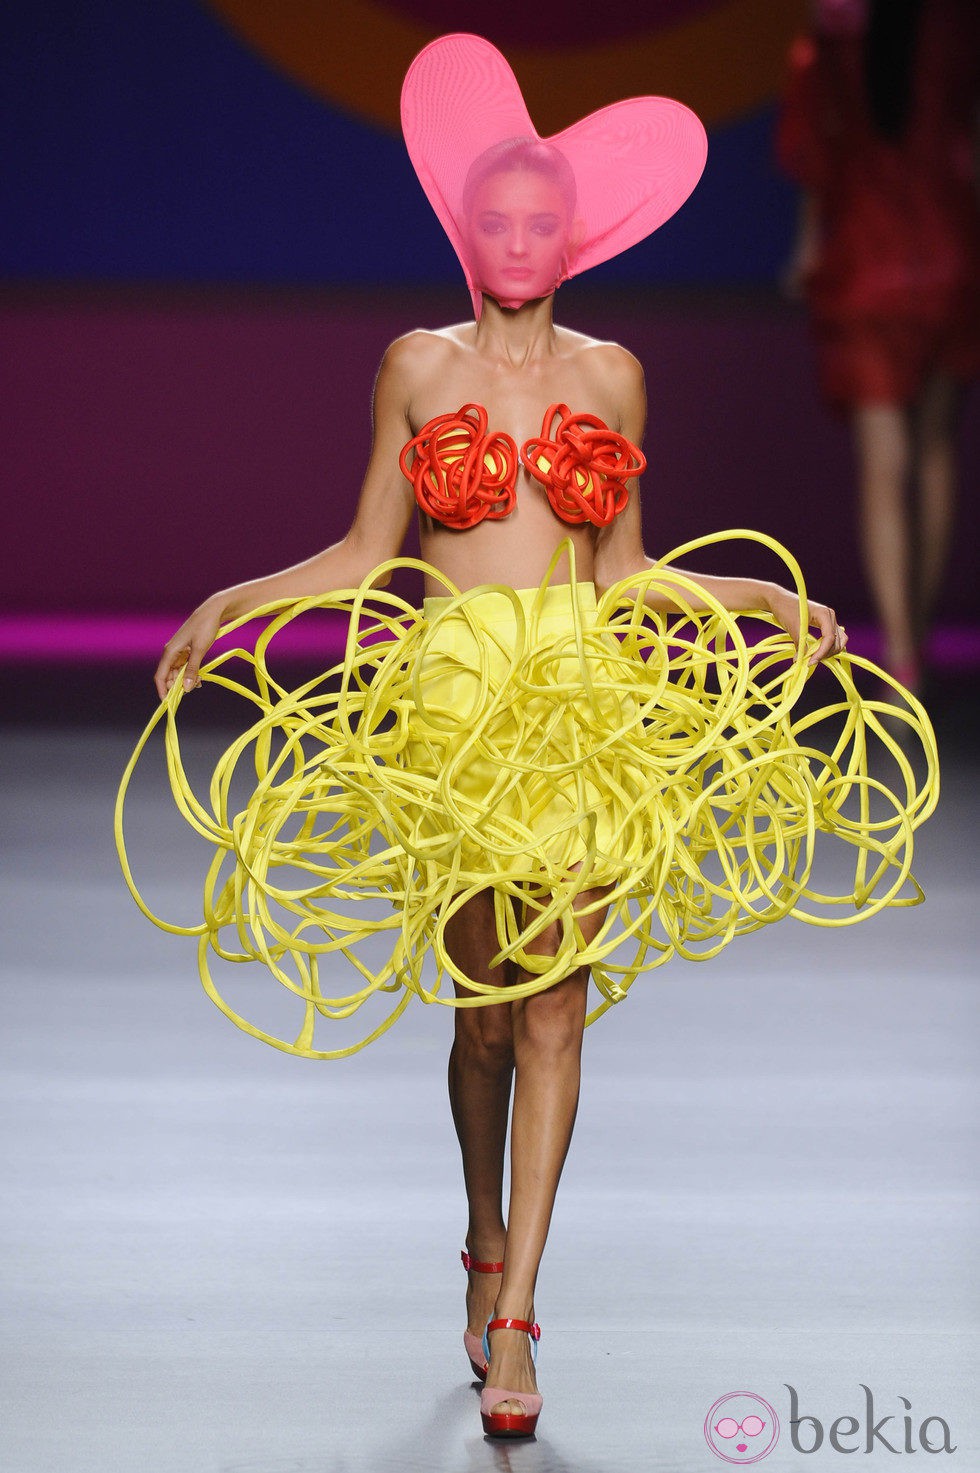 Falda amarilla simulando cables superpuestos  de la colección primavera/verano 2013 de Ágatha Ruíz de la Prada